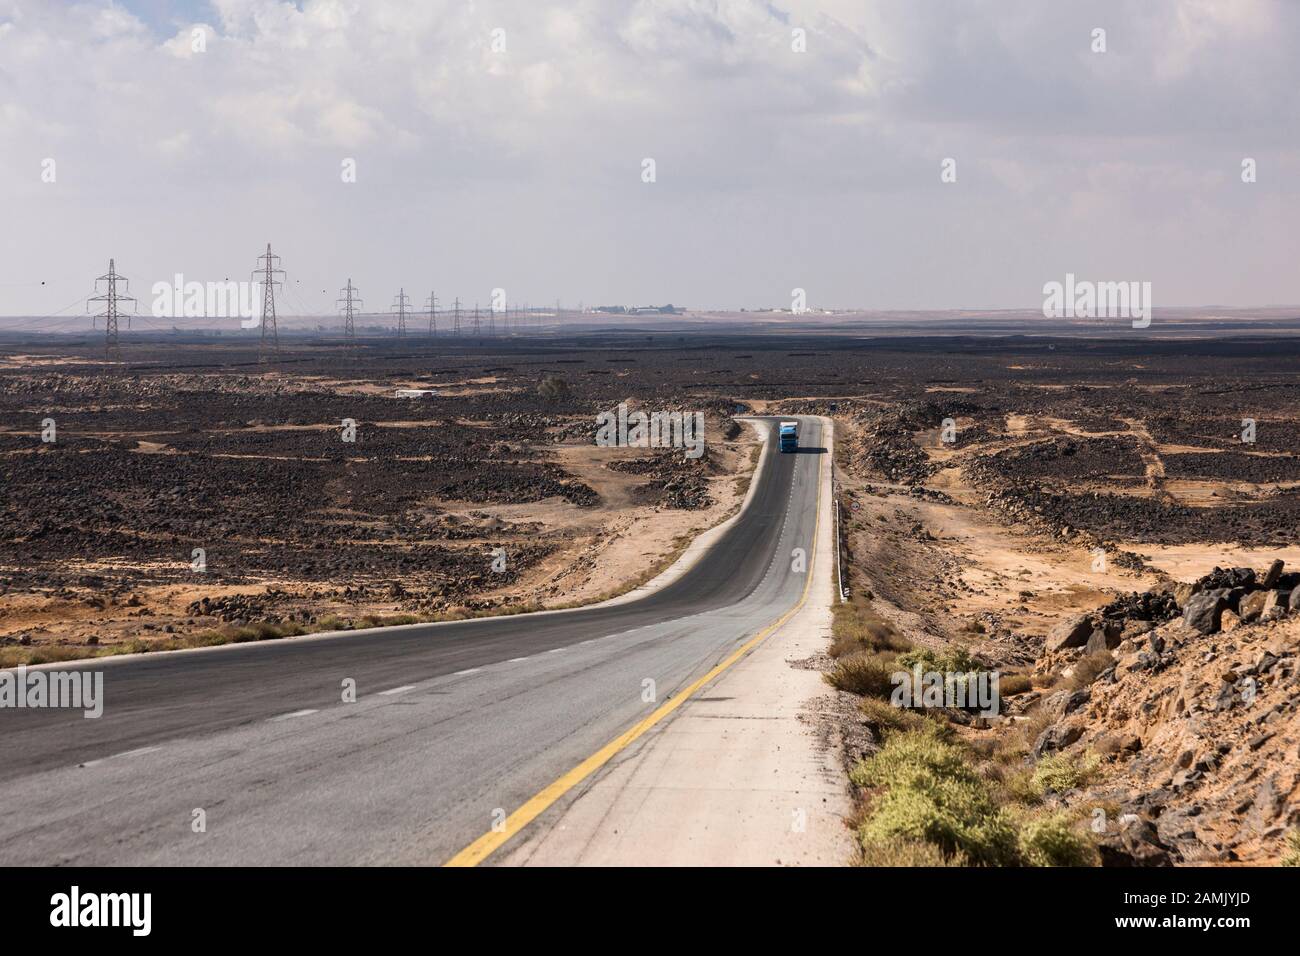 Desert Road, Desert highway, route 5, in basalt gravel desert, near Azraq, eastern desert, Jordan, middle east, Asia Stock Photo